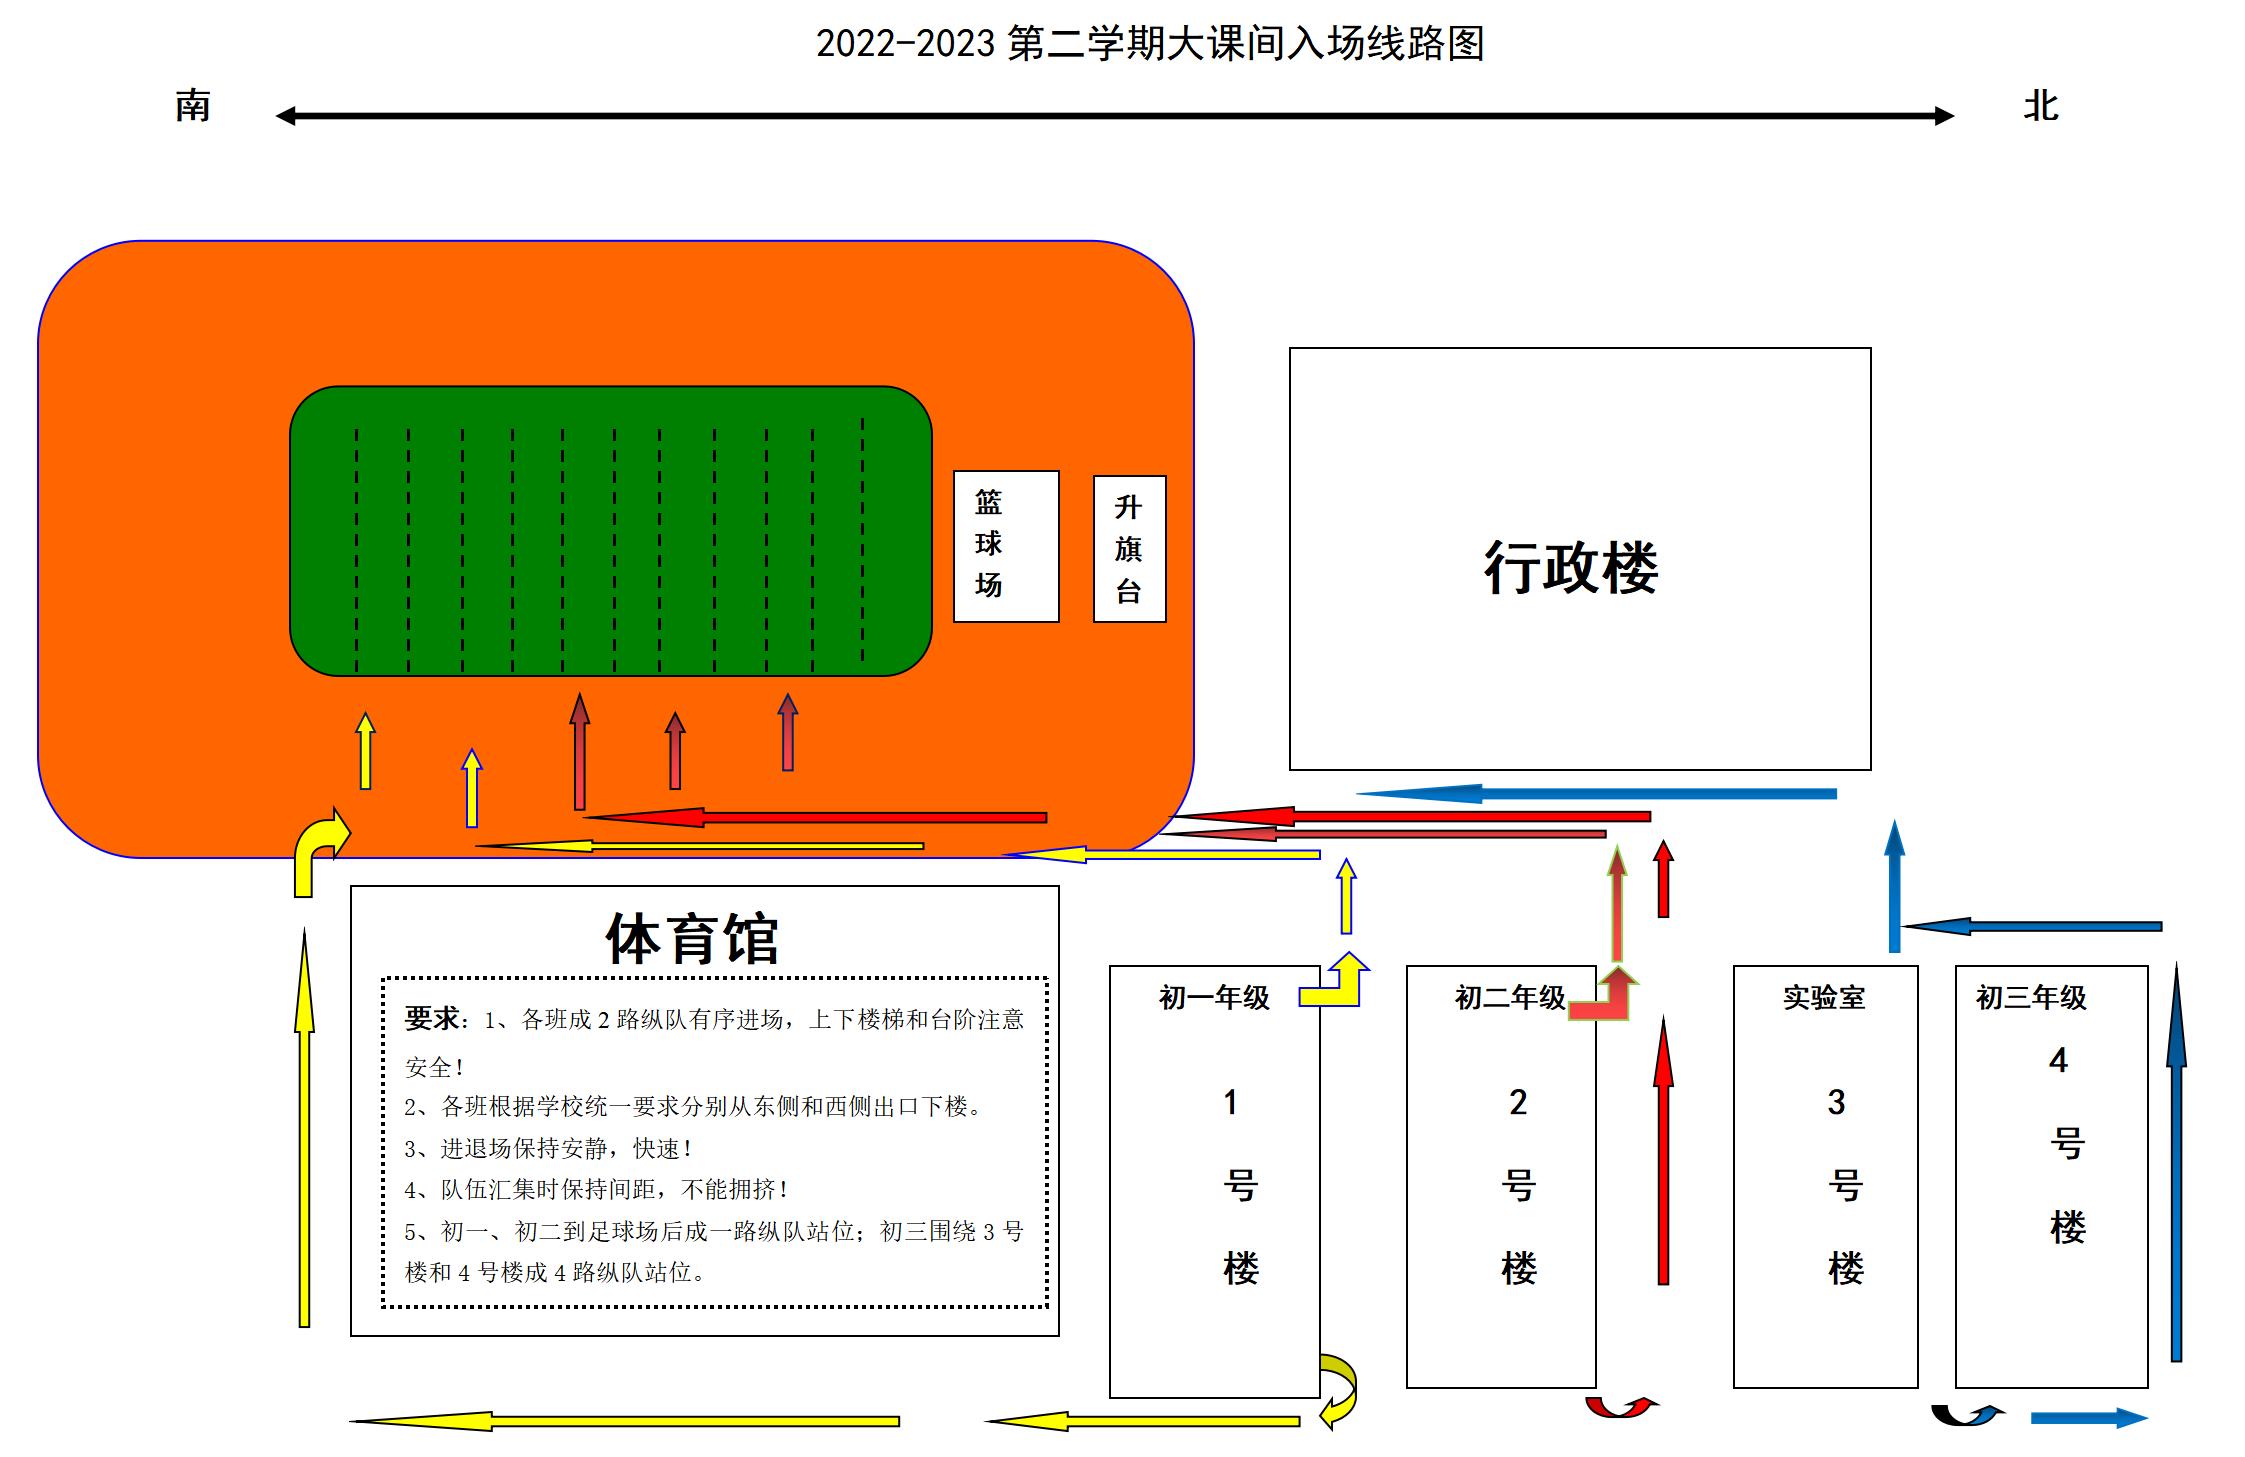 2022-2023第二学期大课间入场线路图_01.jpg